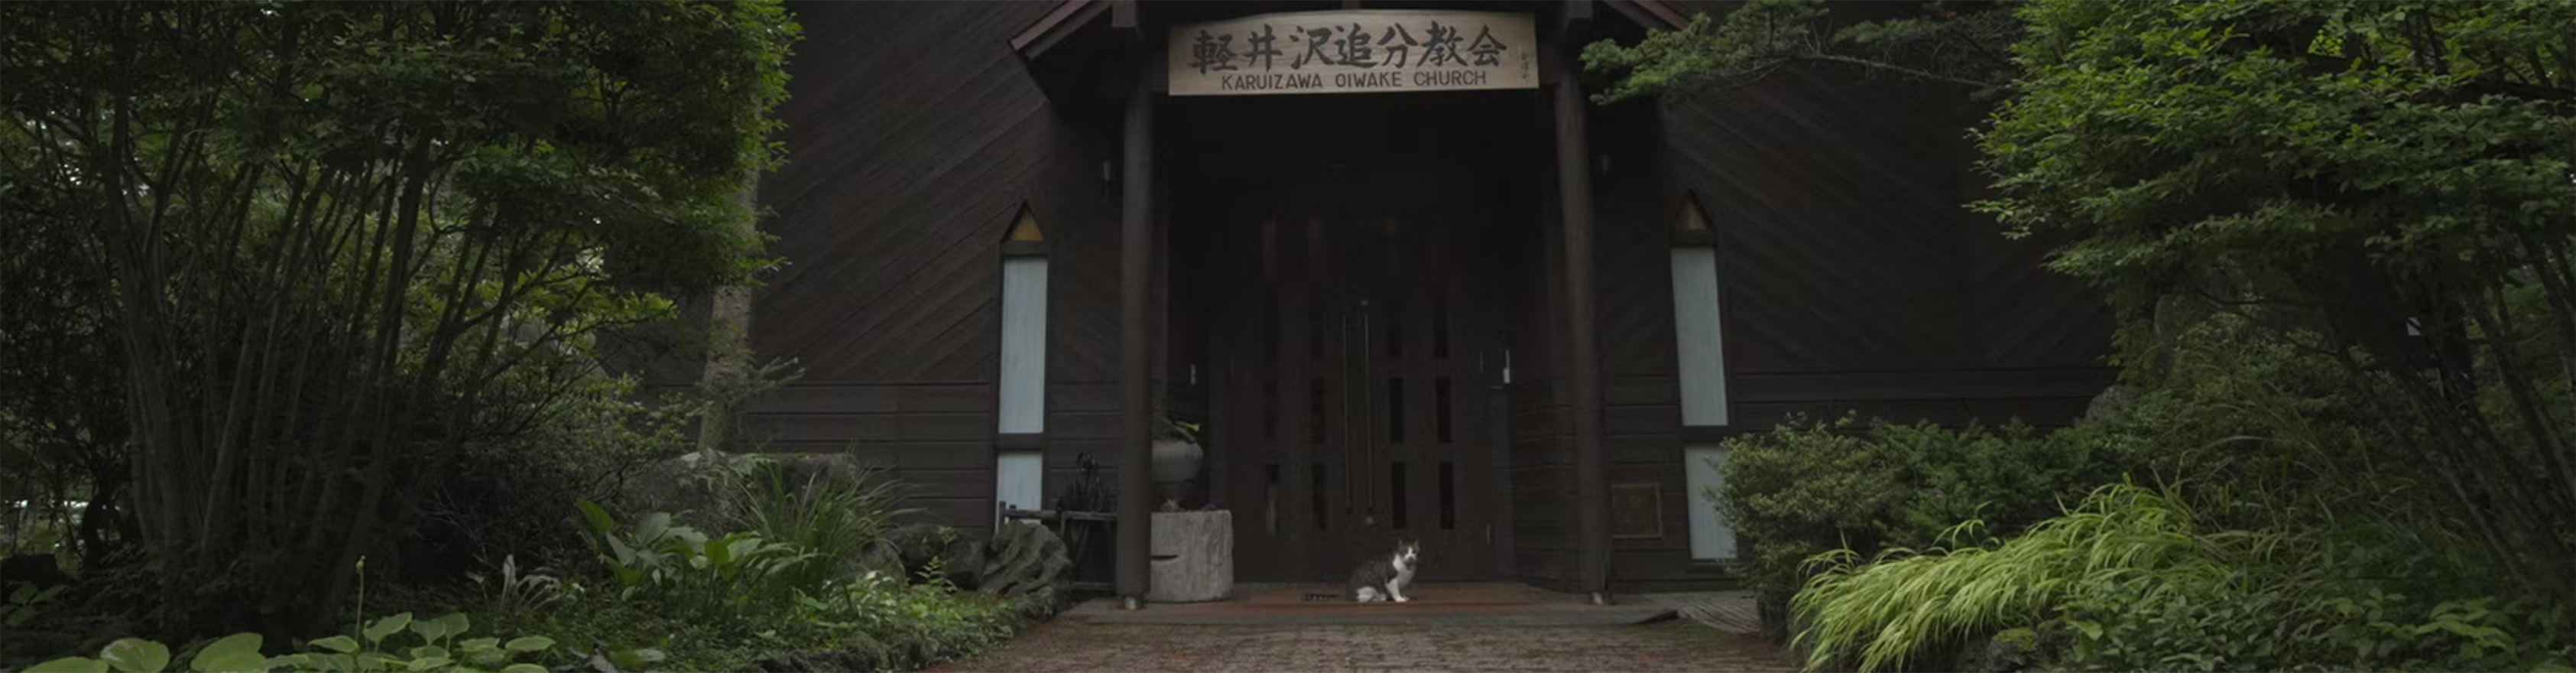 礼拝堂の前で猫のあずきが佇む様子